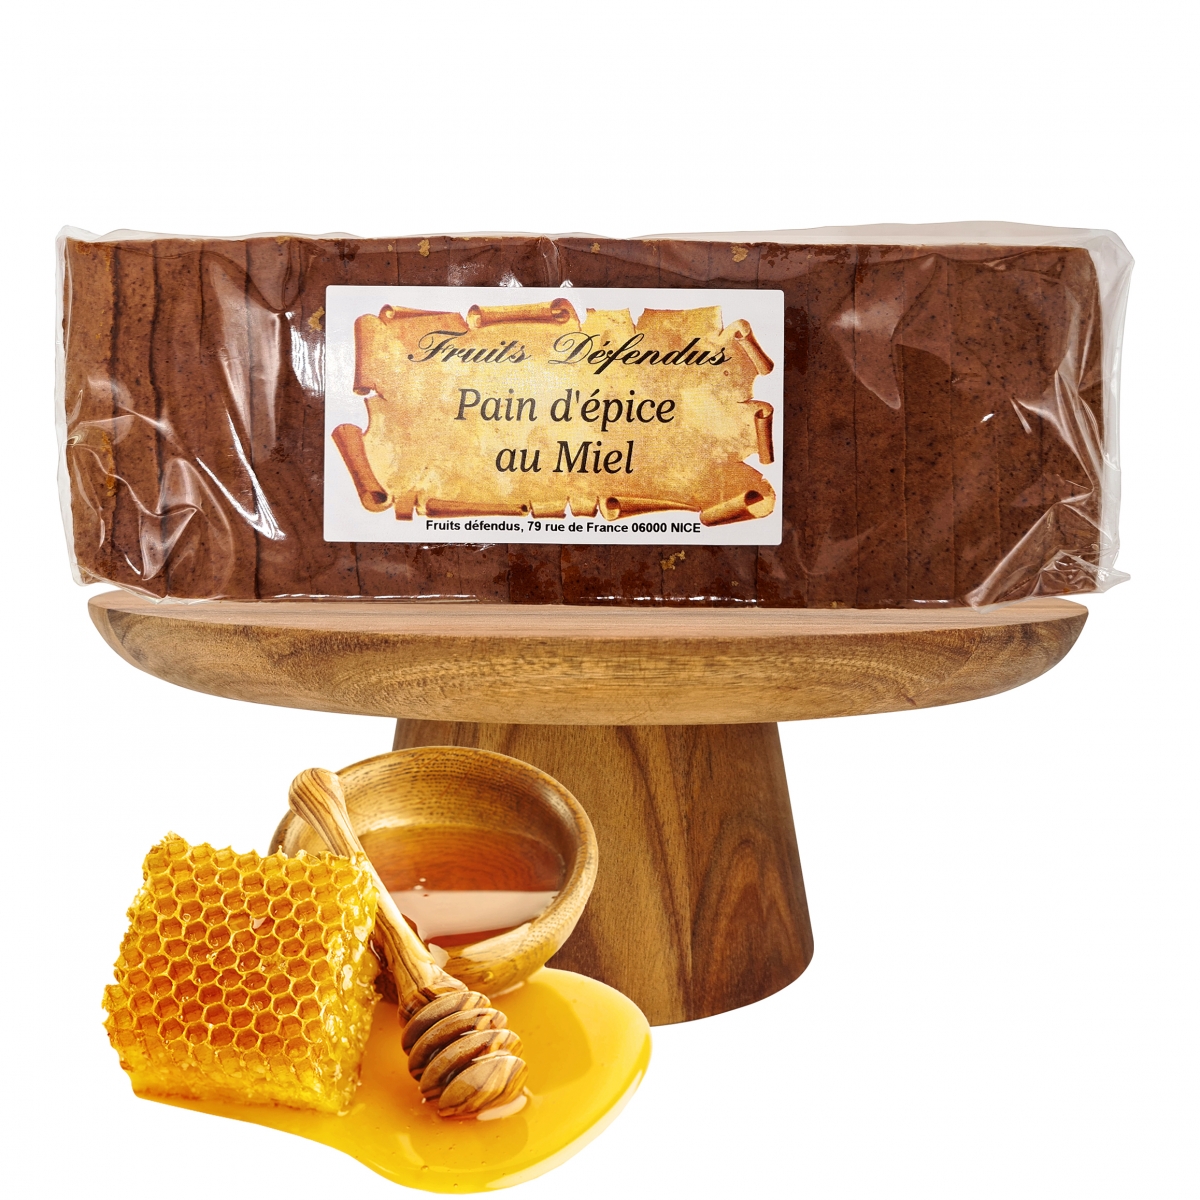 Pian d'épice artisanale pur miel